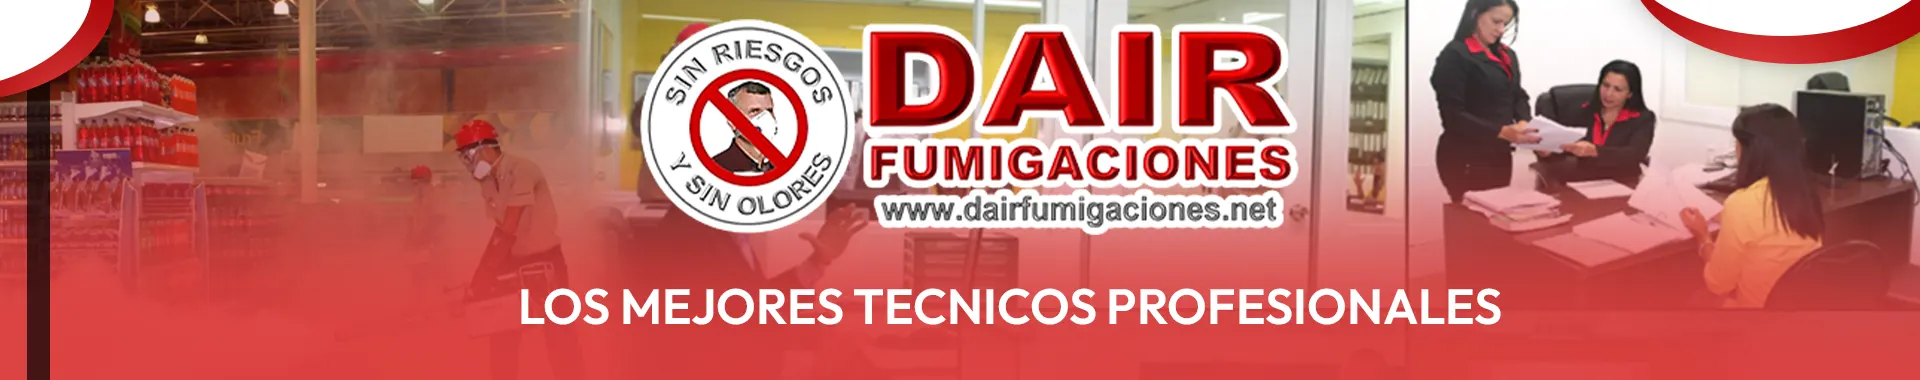 Imagen 5 del perfil de Dair Fumigaciones